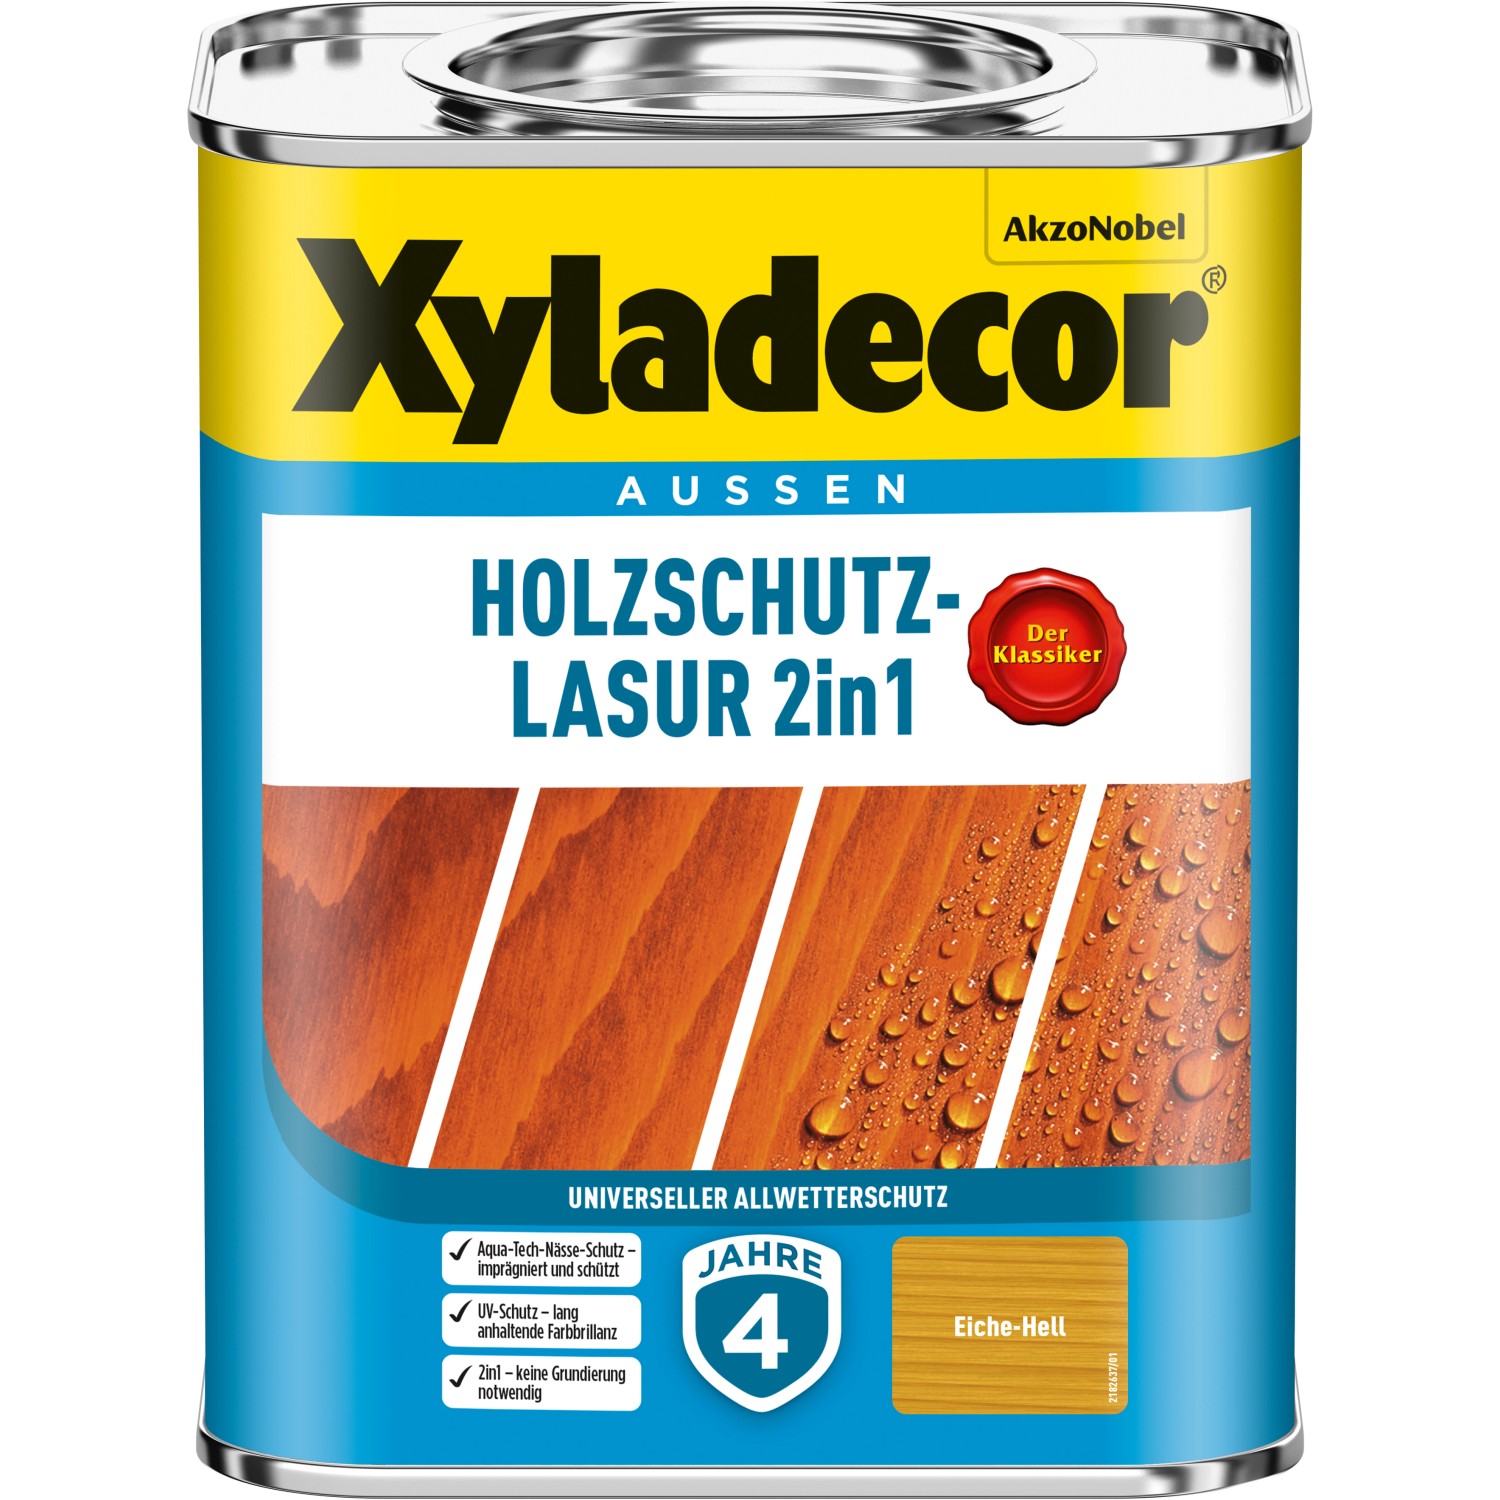 Xyladecor Holzschutz-Lasur 2in1 Eiche-Hell matt 750 ml von Xyladecor